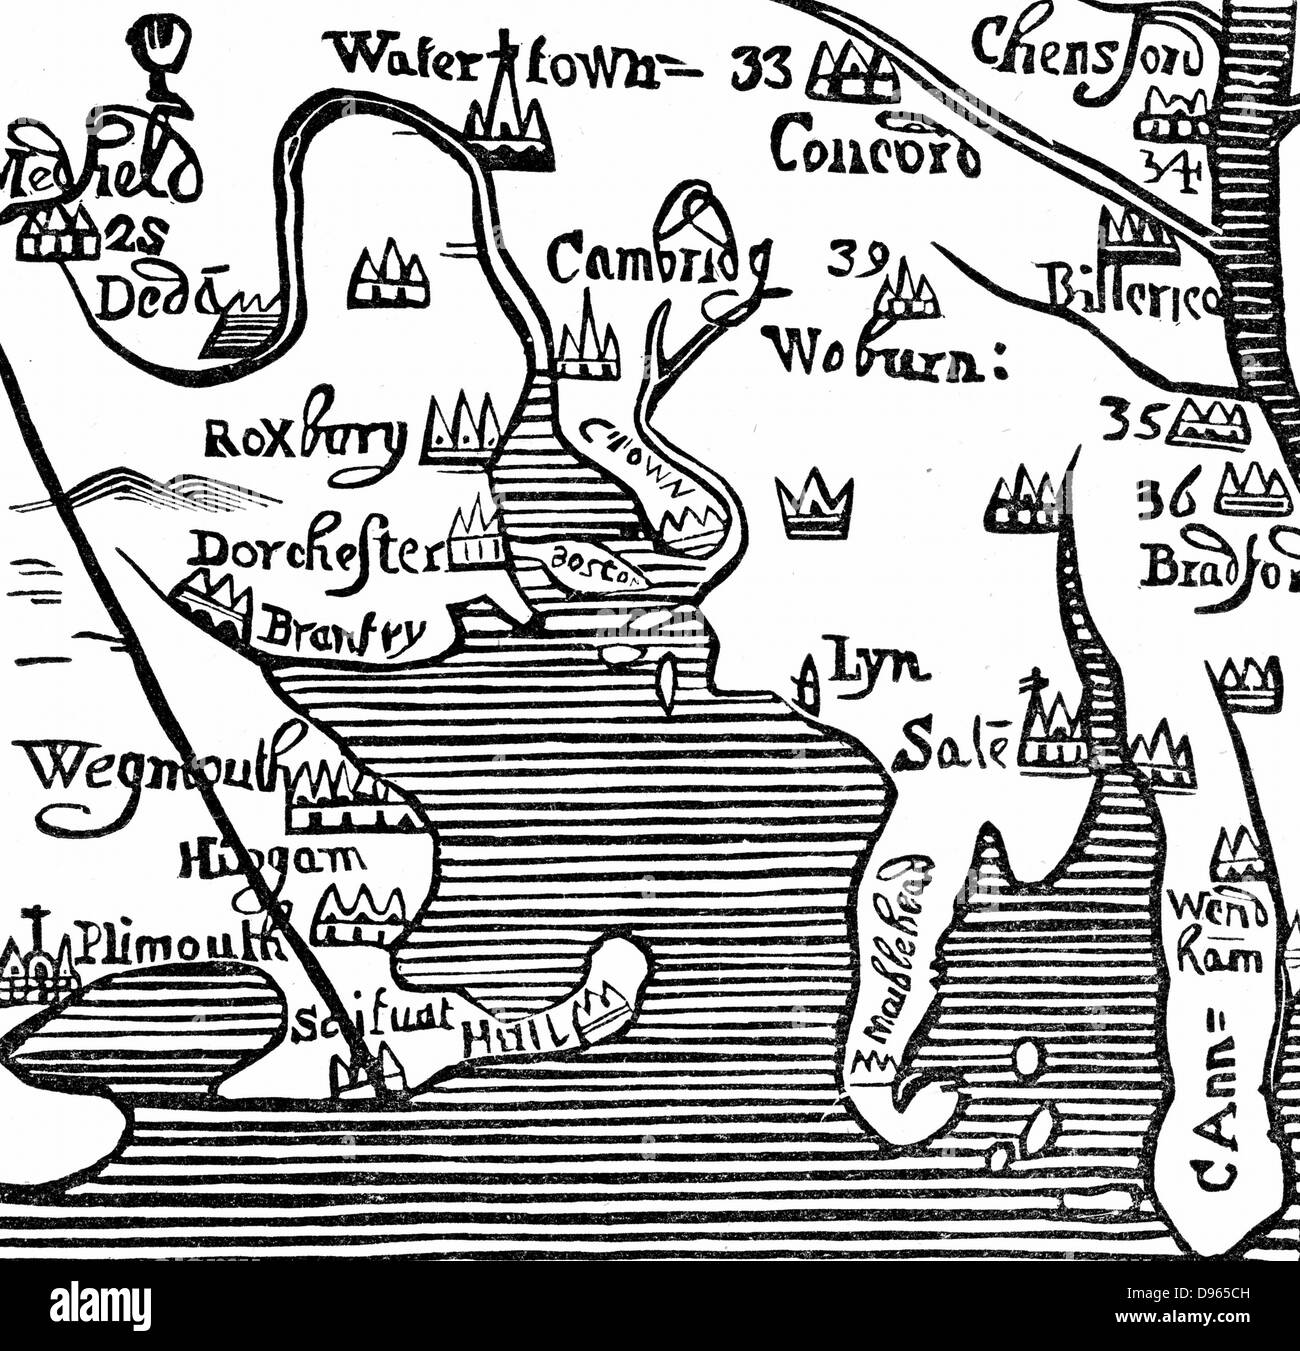 Frühe Karte von Massachusetts Bay, Amerika. Massachusetts wurde zuerst von den Pilgrim Fathers angesiedelt, die Puritaner, die religiöse Verfolgung in England und segelten nach Amerika, von Plymouth, England, über Leiden in den Niederlanden, im Jahre 1620. Holzschnitt. Stockfoto